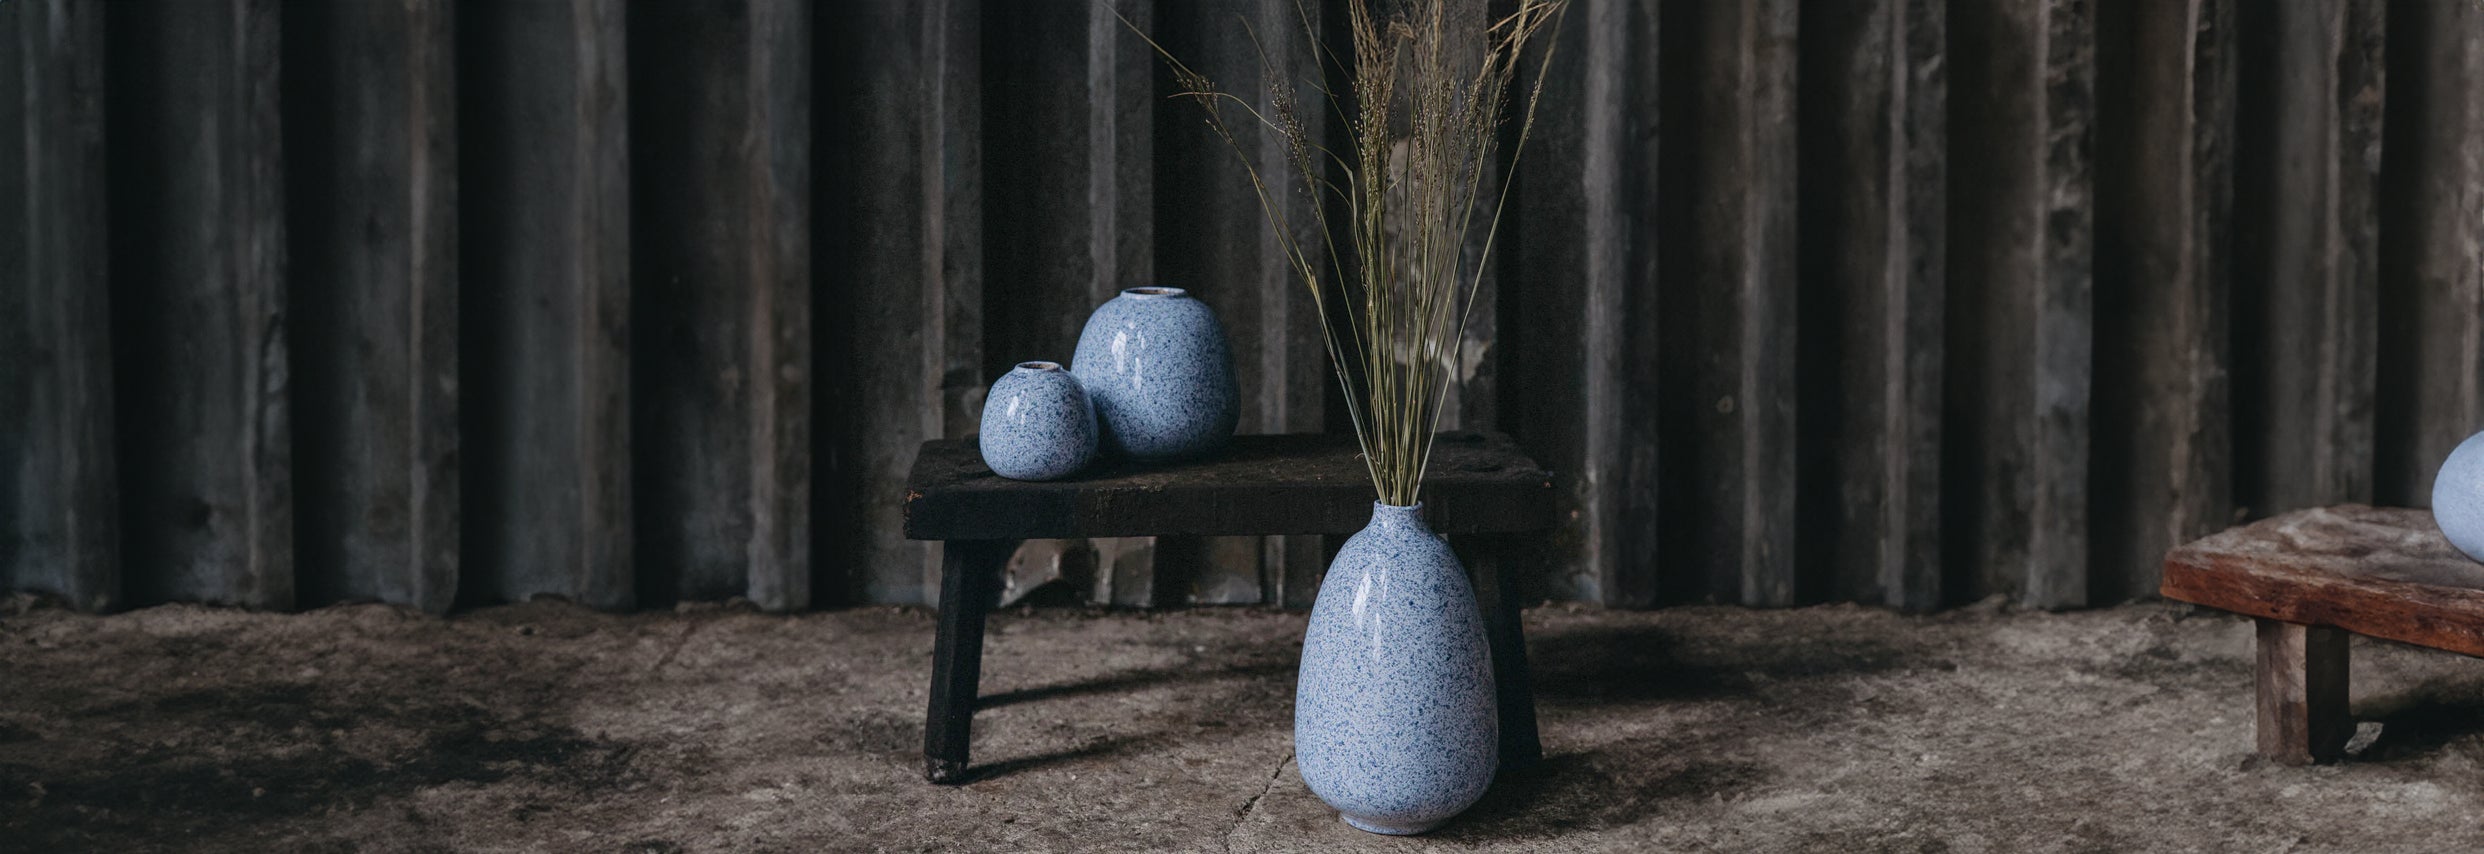 Tauche ein in die Tiefe: Trendfarbe Blau für Vasen und Deko